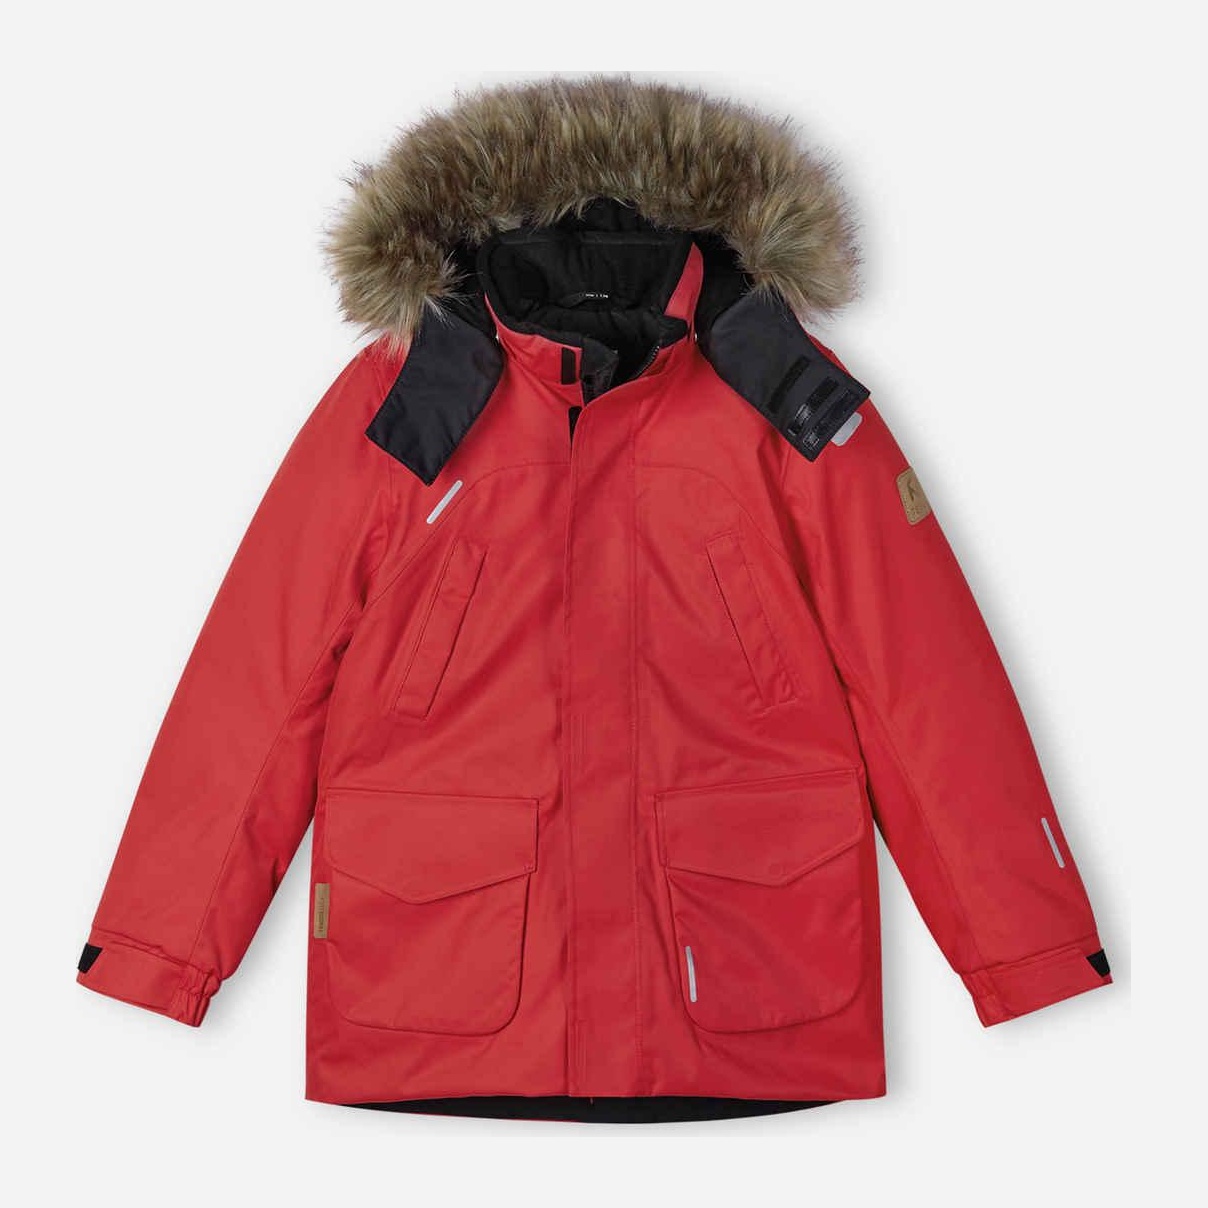 Акция на Підліткова зимова термо куртка-парка для дівчинки Reima Serkku 531354-3880 146 см от Rozetka